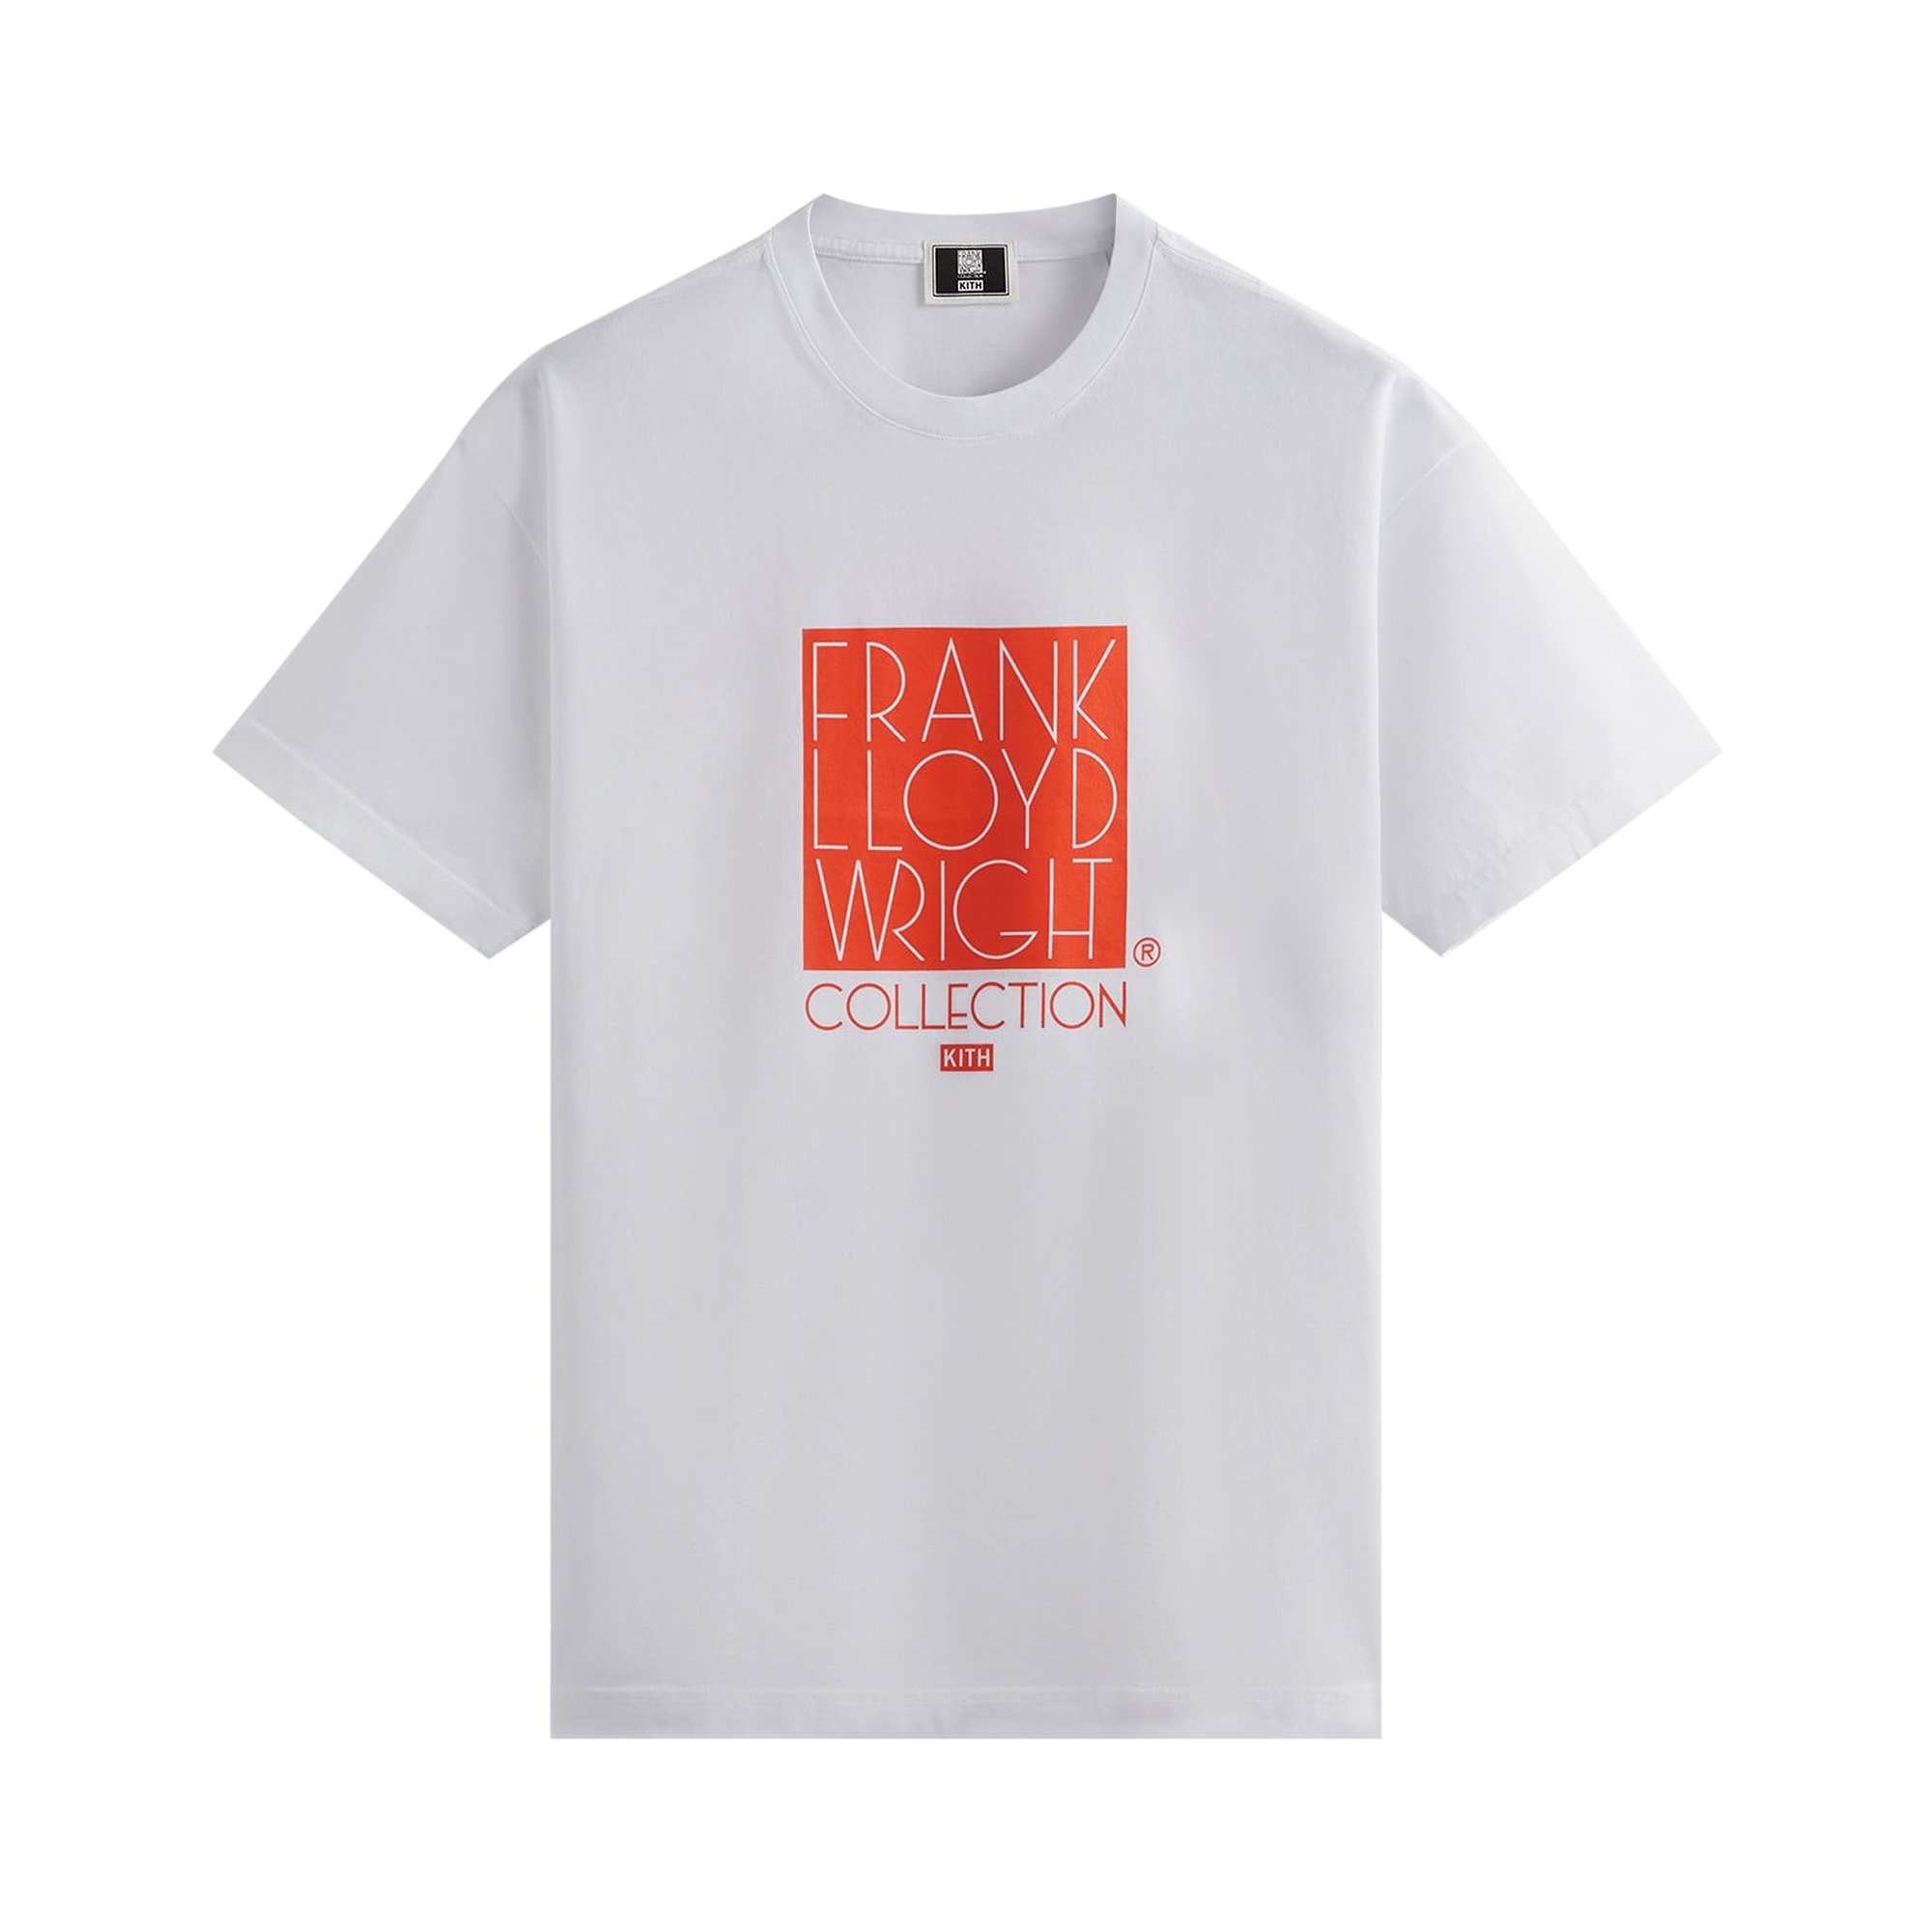 frank lloyd wright Белая футболка с логотипом Kith For Frank Lloyd Wright Foundation